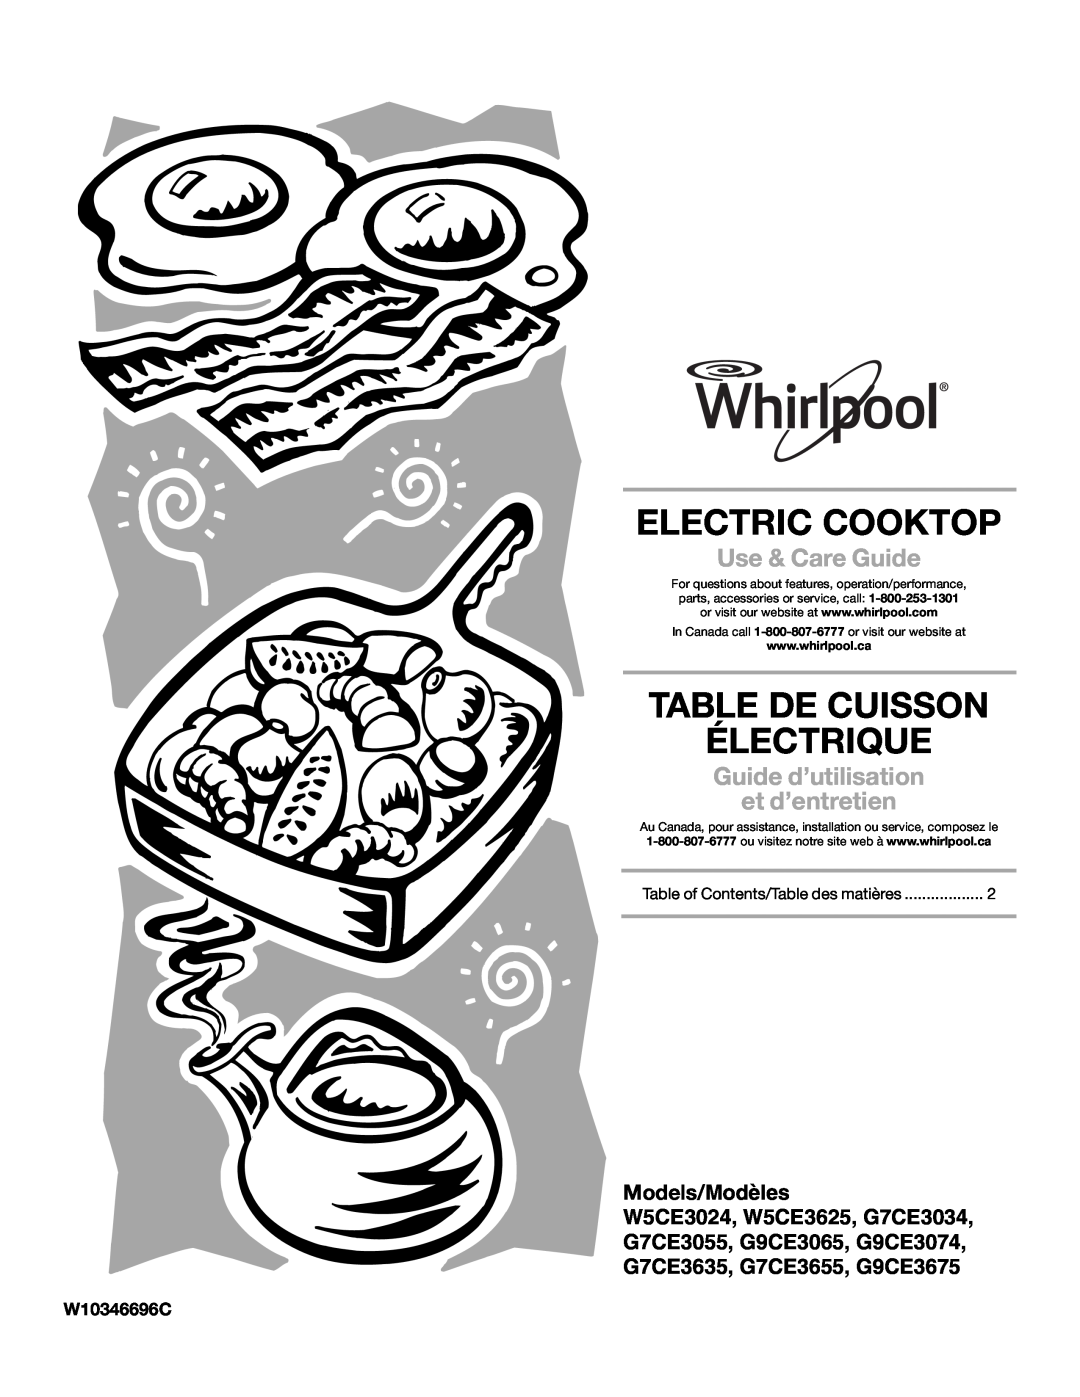 Whirlpool G7CE3034XB manual Electric Cooktop, Table De Cuisson Électrique, W10346696C, Use & Care Guide, Models/Modèles 